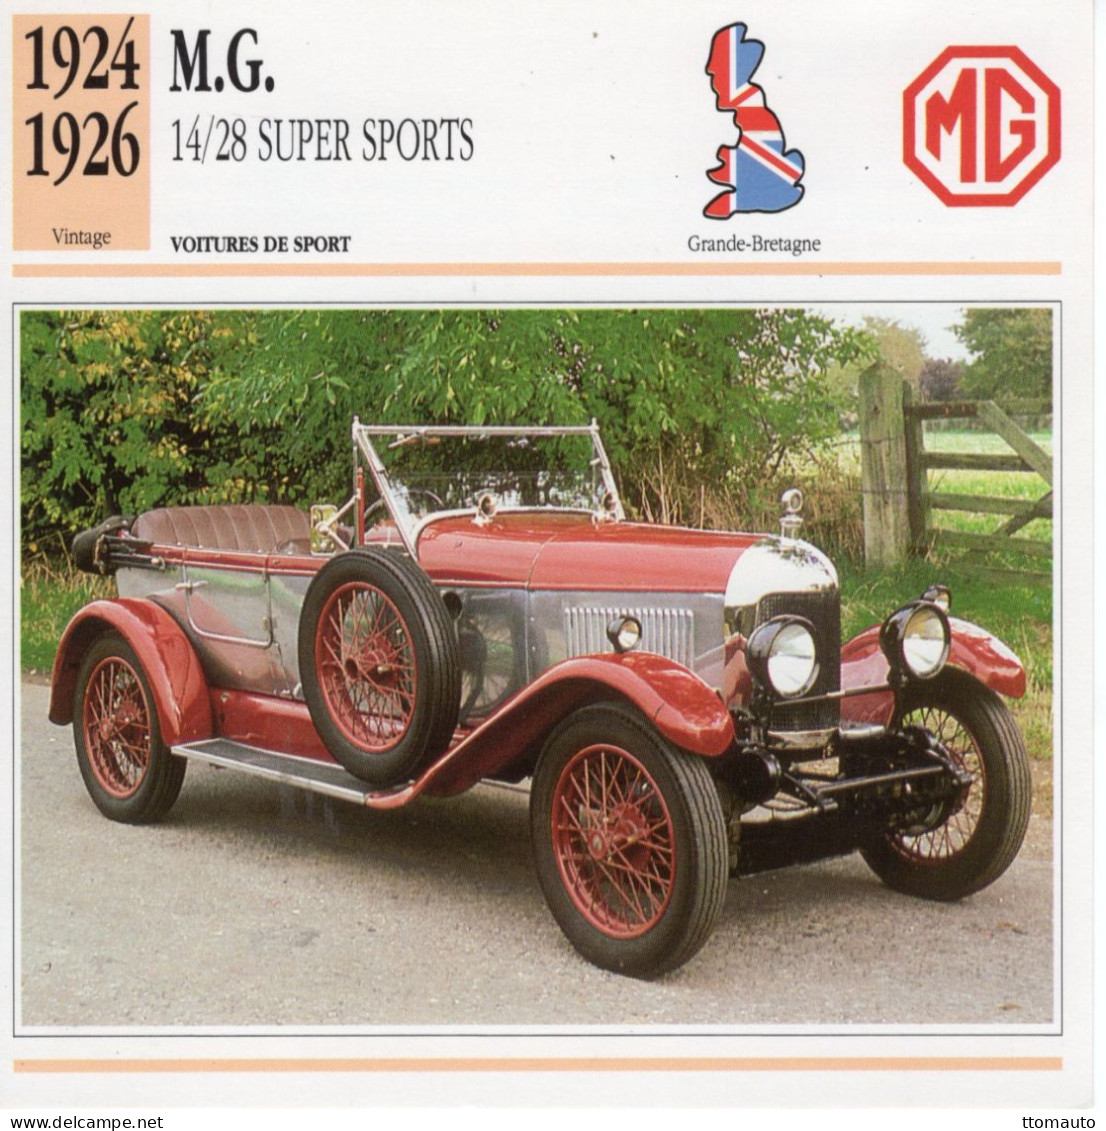 Fiche  -  Voiture De Sport  -  M.G. 14/28 Super Sports  (1926)   -  Carte De Collection - Autos